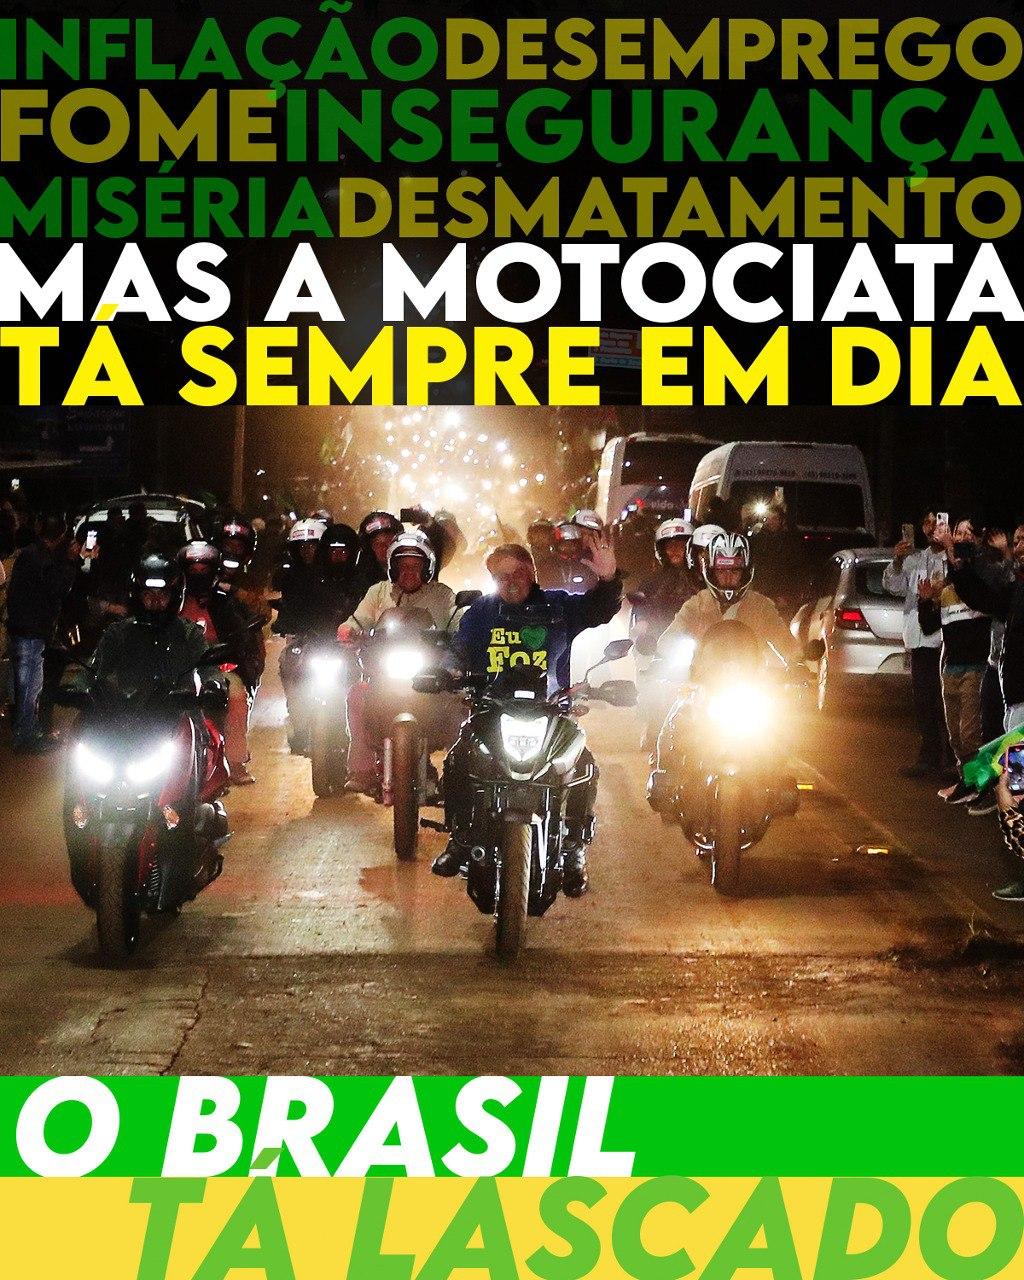 Tesoureiros - O Brasil tá lascado com motociata